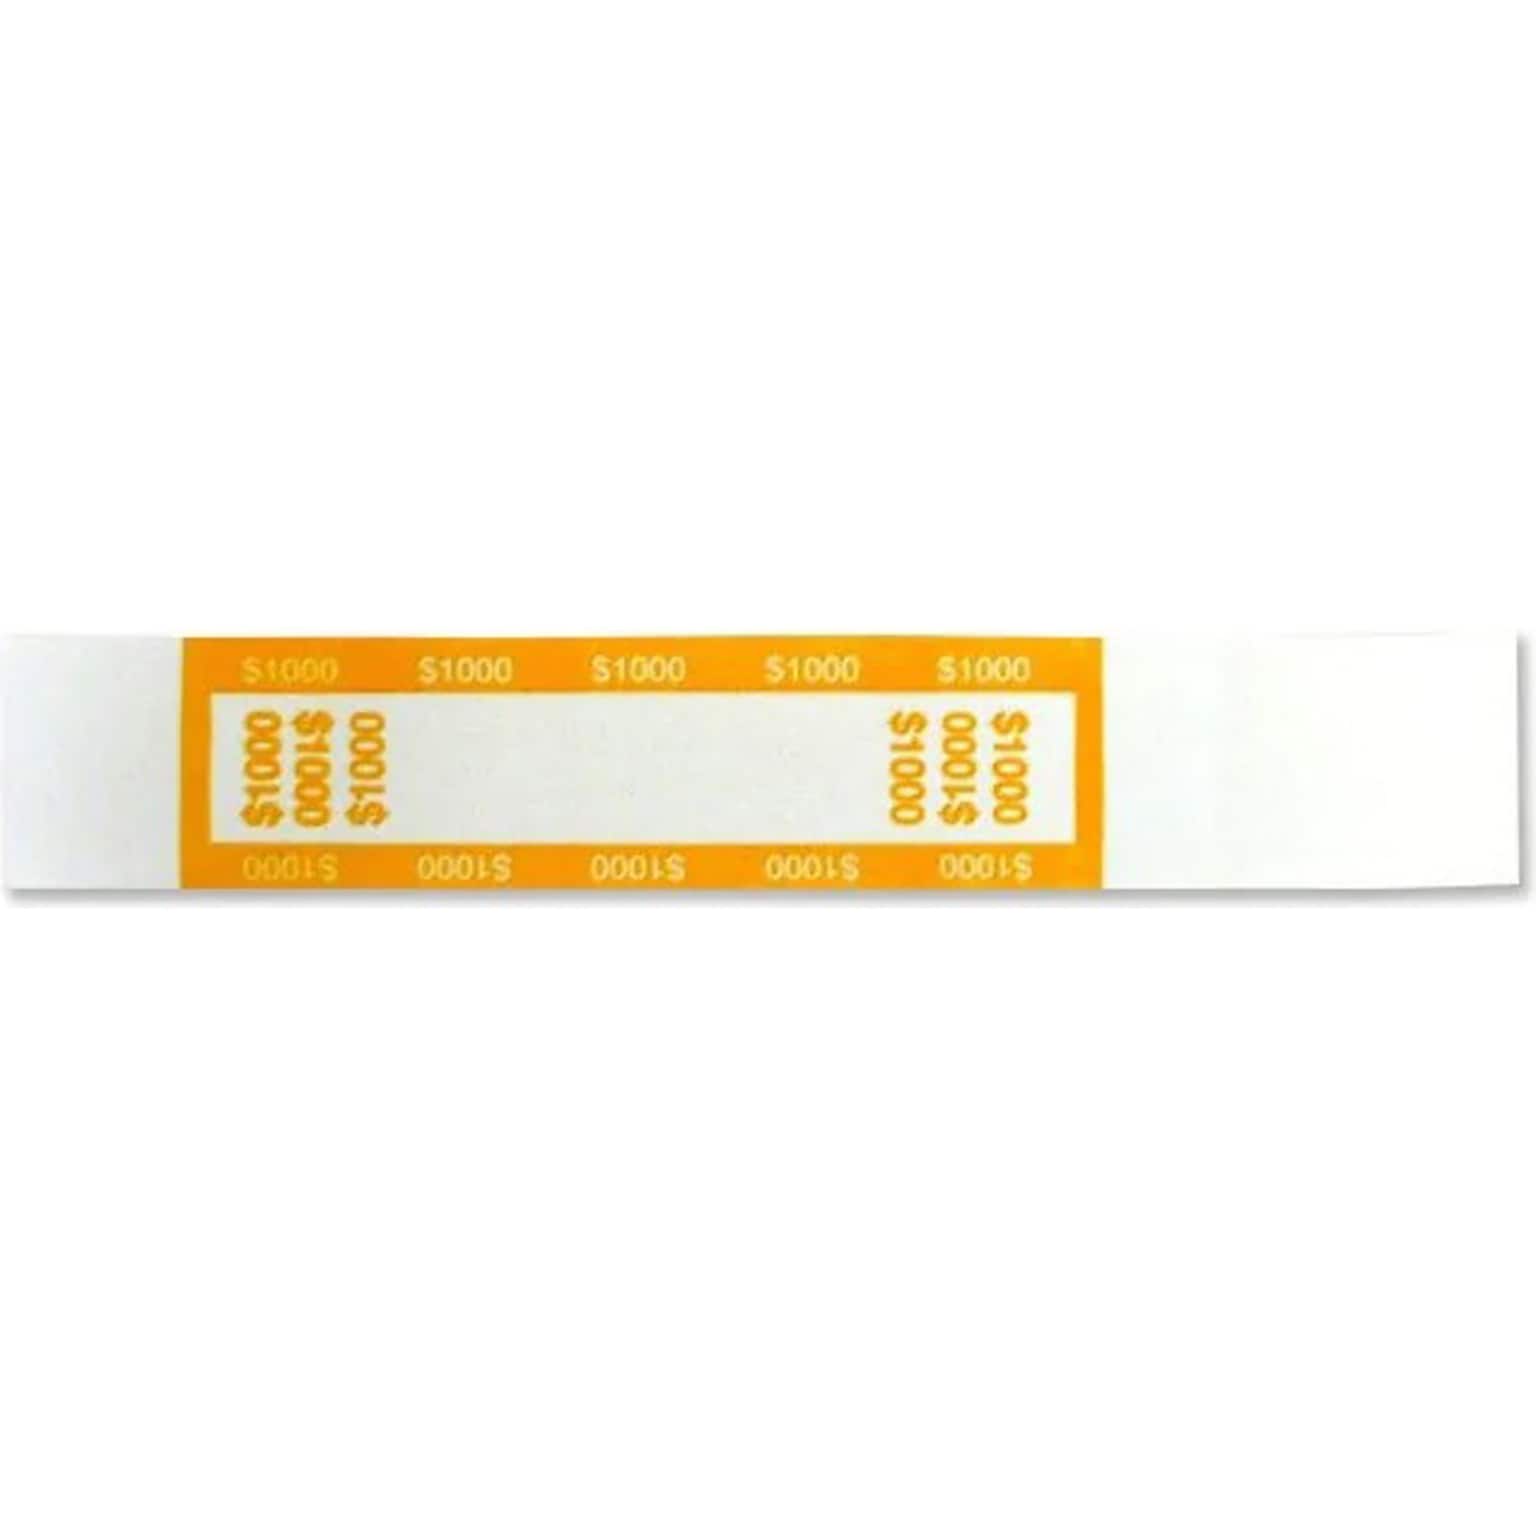 CONTROLTEK Currency Strap, White/Yellow, 25000/Carton (560020)